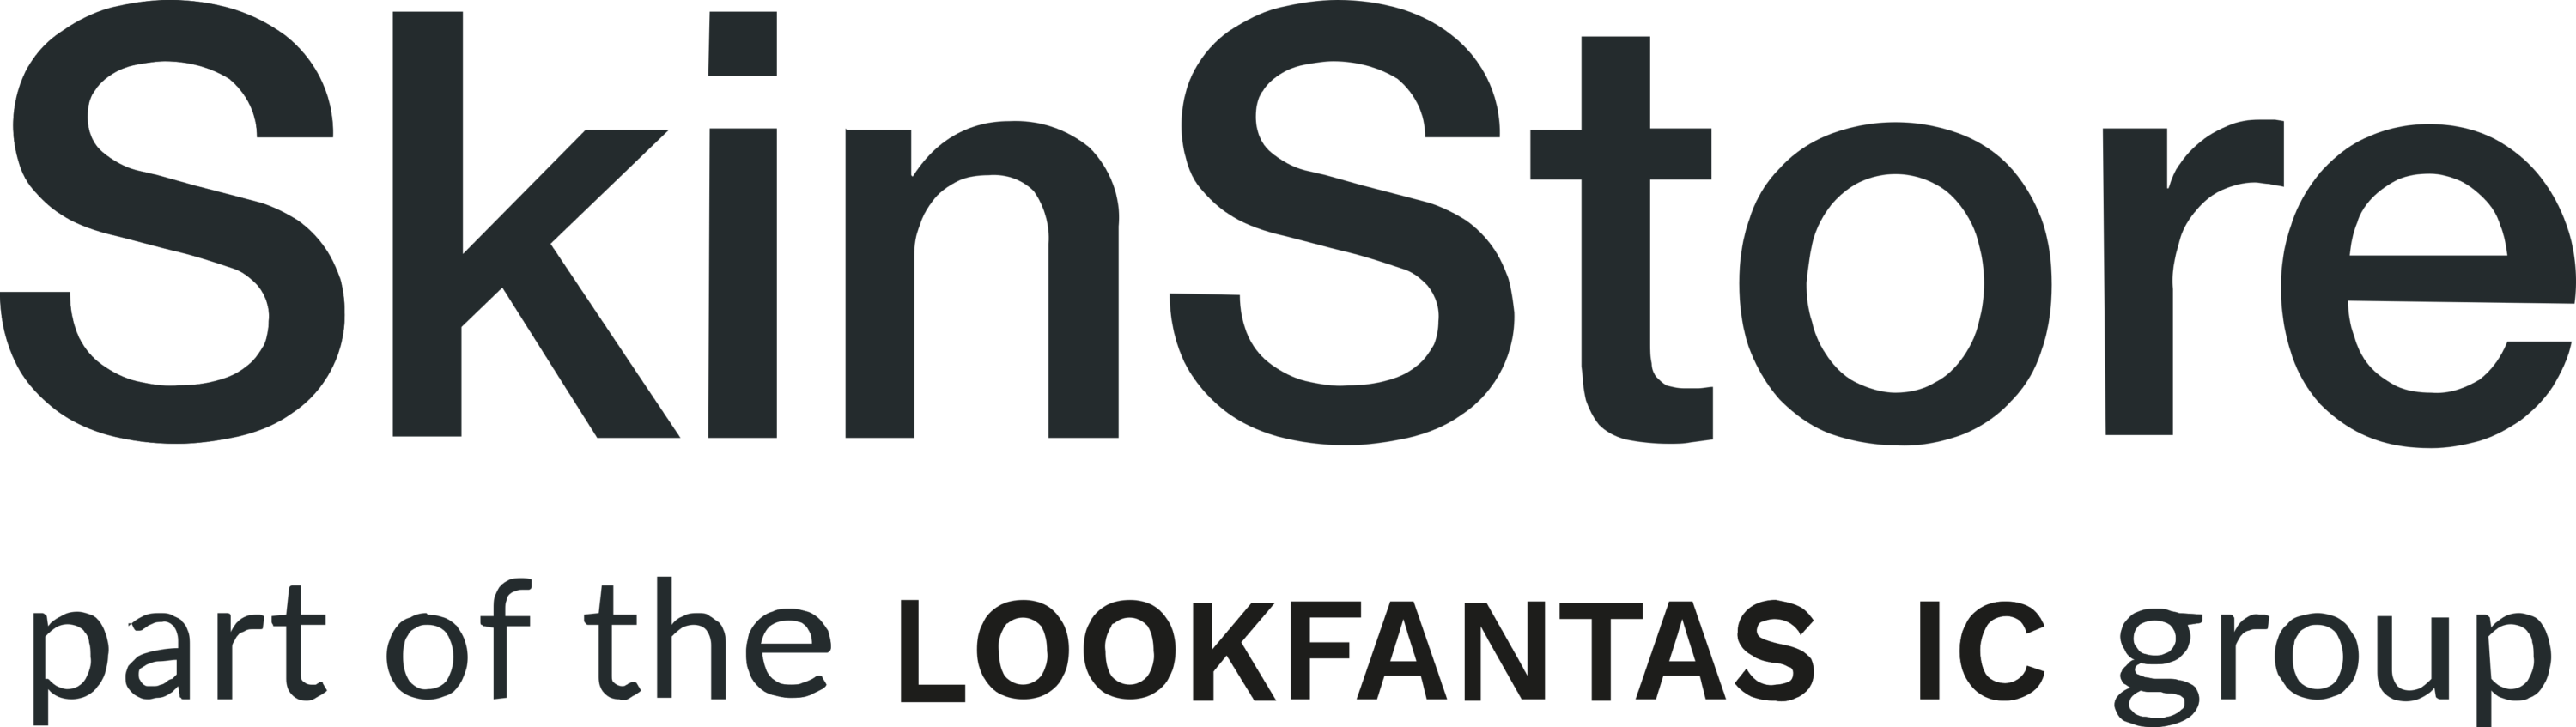 Skinstore Logo